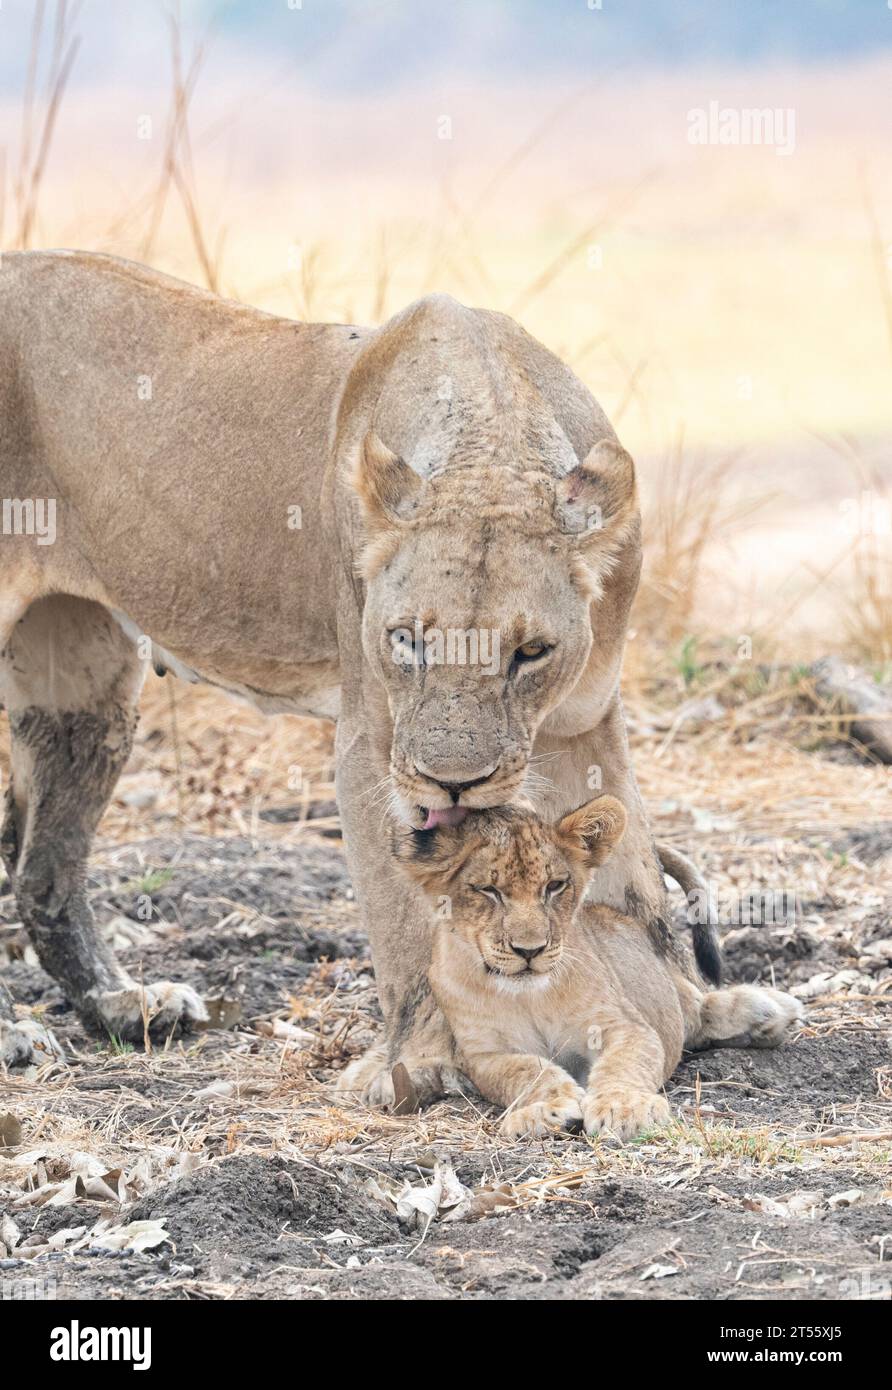 Löwenin verwöhnt ihr Junges AFRIKA HERZSCHMELZENDE Bilder zeigen eine Löwenfamilie mit dem Spitznamen "die Hollywoods". Weil sie so außergewöhnlich gut aussehen und Stockfoto